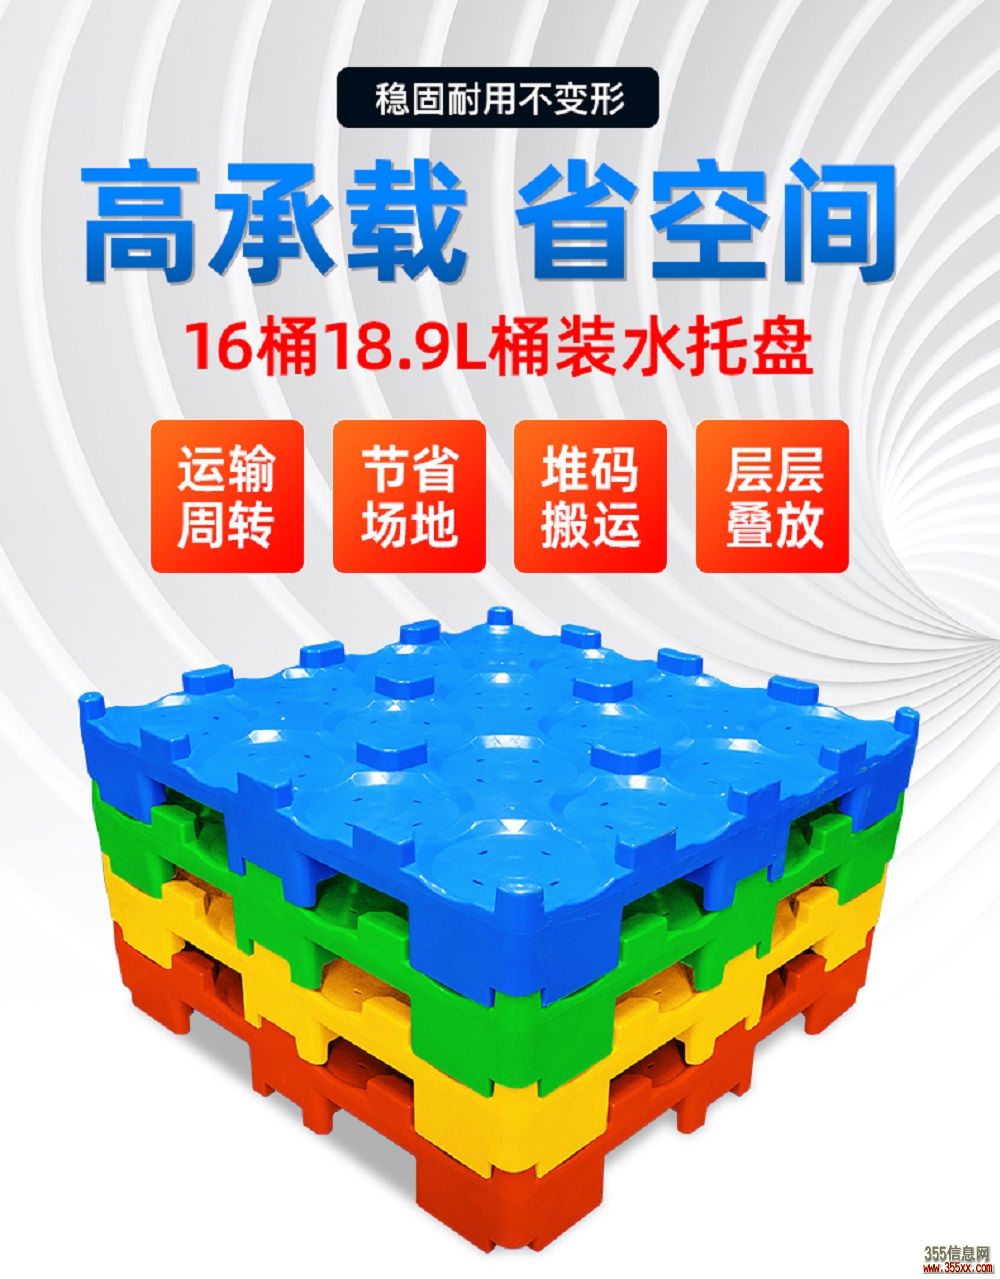 广西柳州桶装水托盘 16桶桶装水塑料托盘 水厂周转托盘